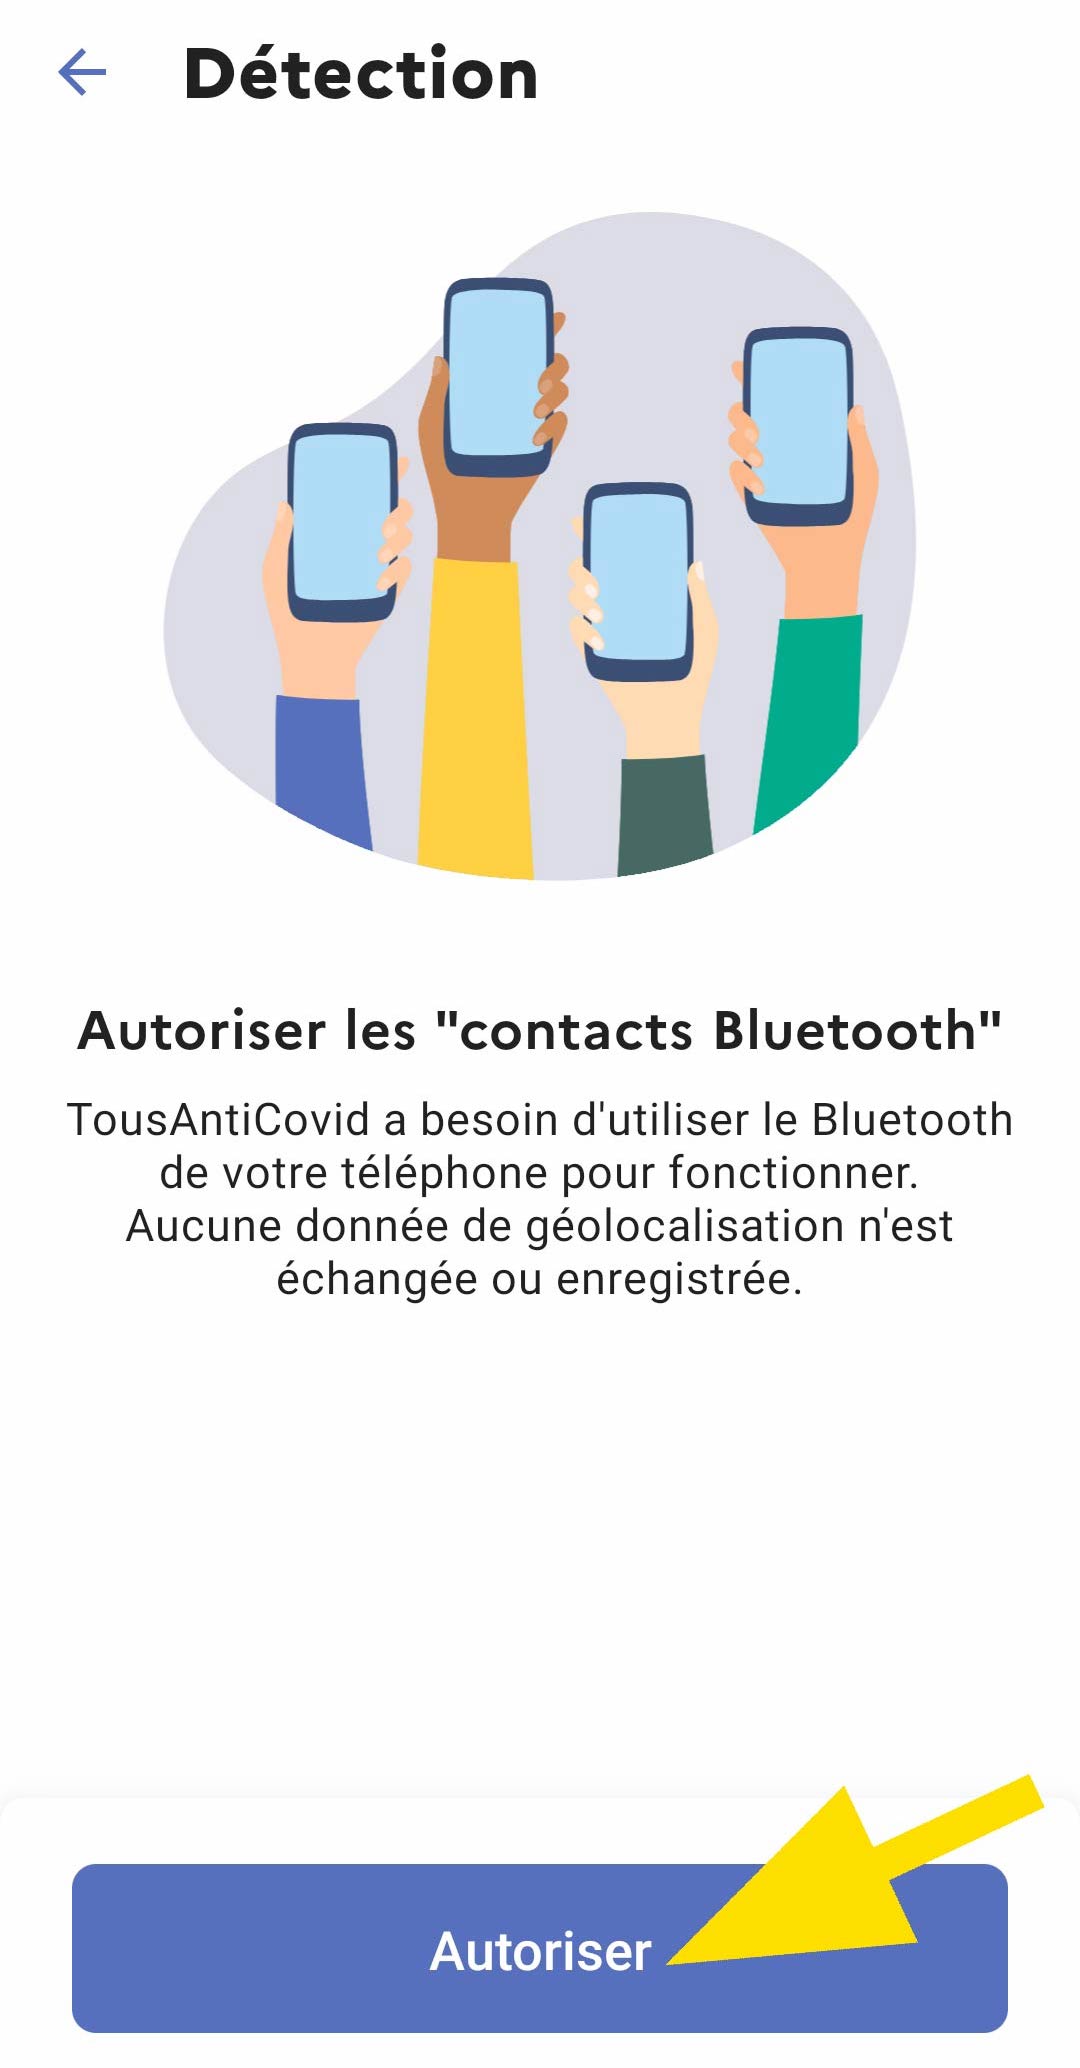  bouton 1 autoriser les contacts bluetooth TousAntiCovid